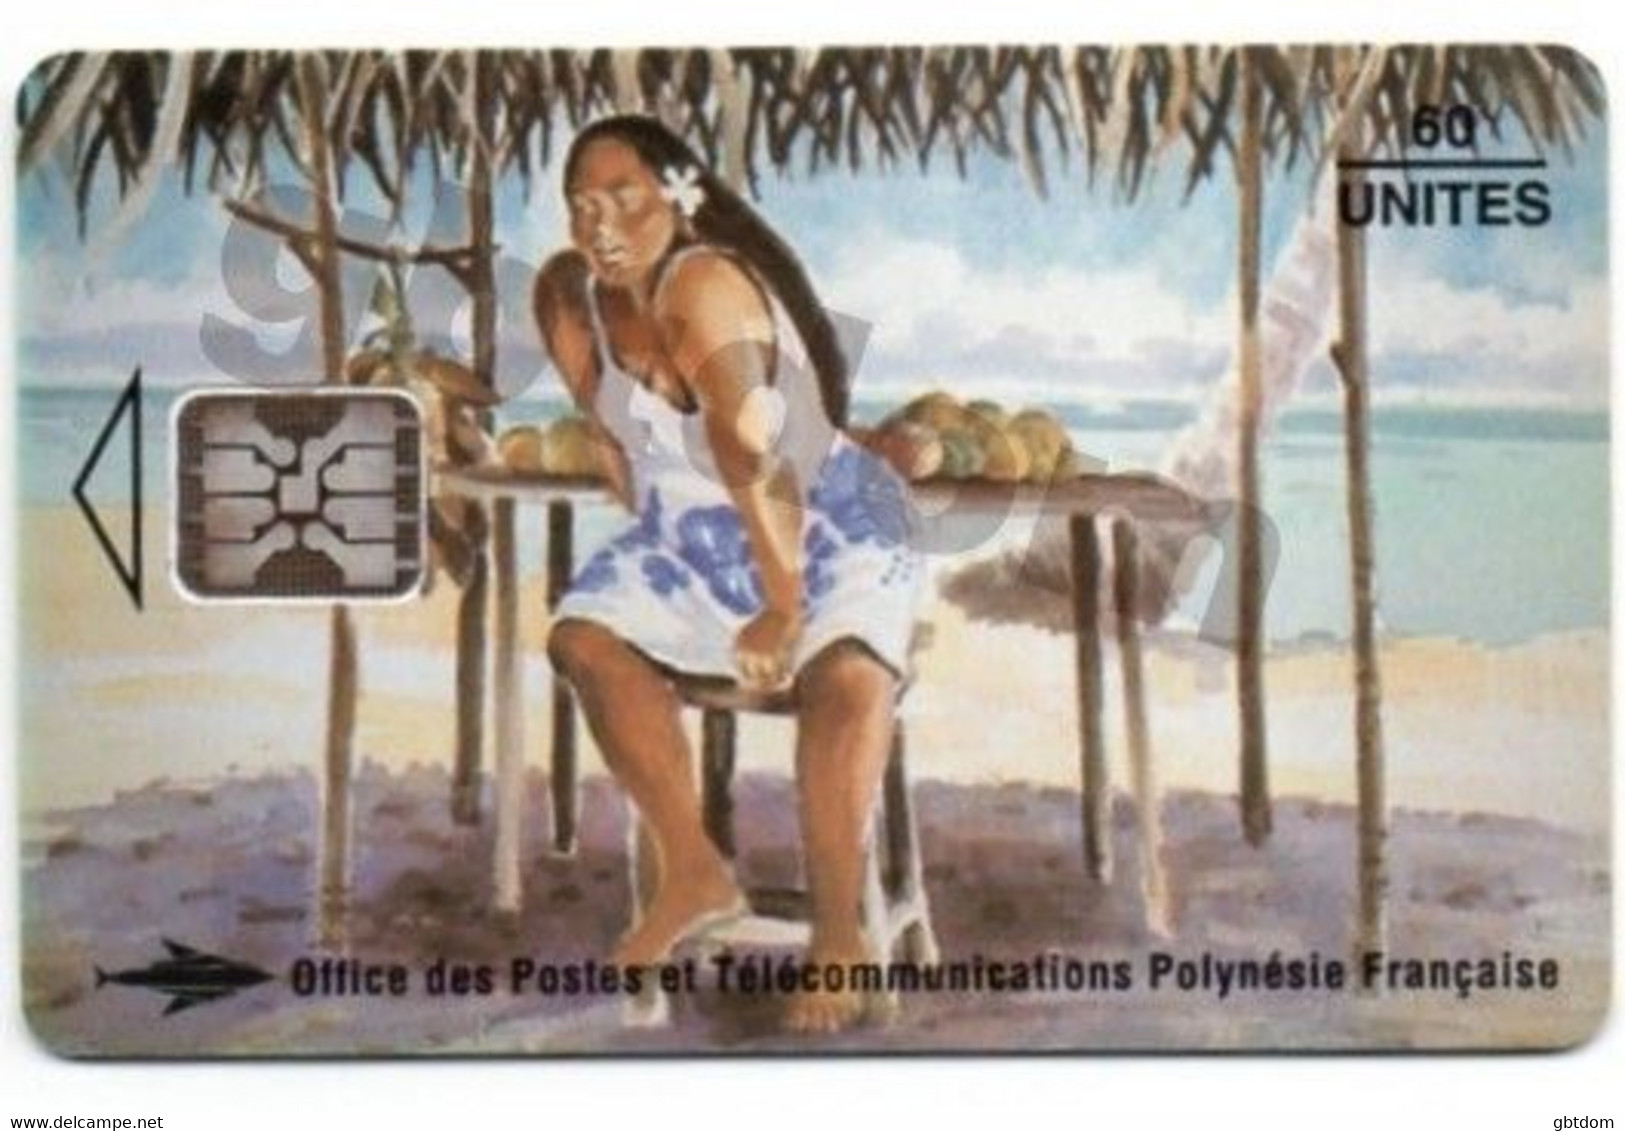 Magnifique Carte Téléphonique De TAHITI Polynésie Française - Vendeuse De Mangues - Erhard Lux - Autres - Océanie